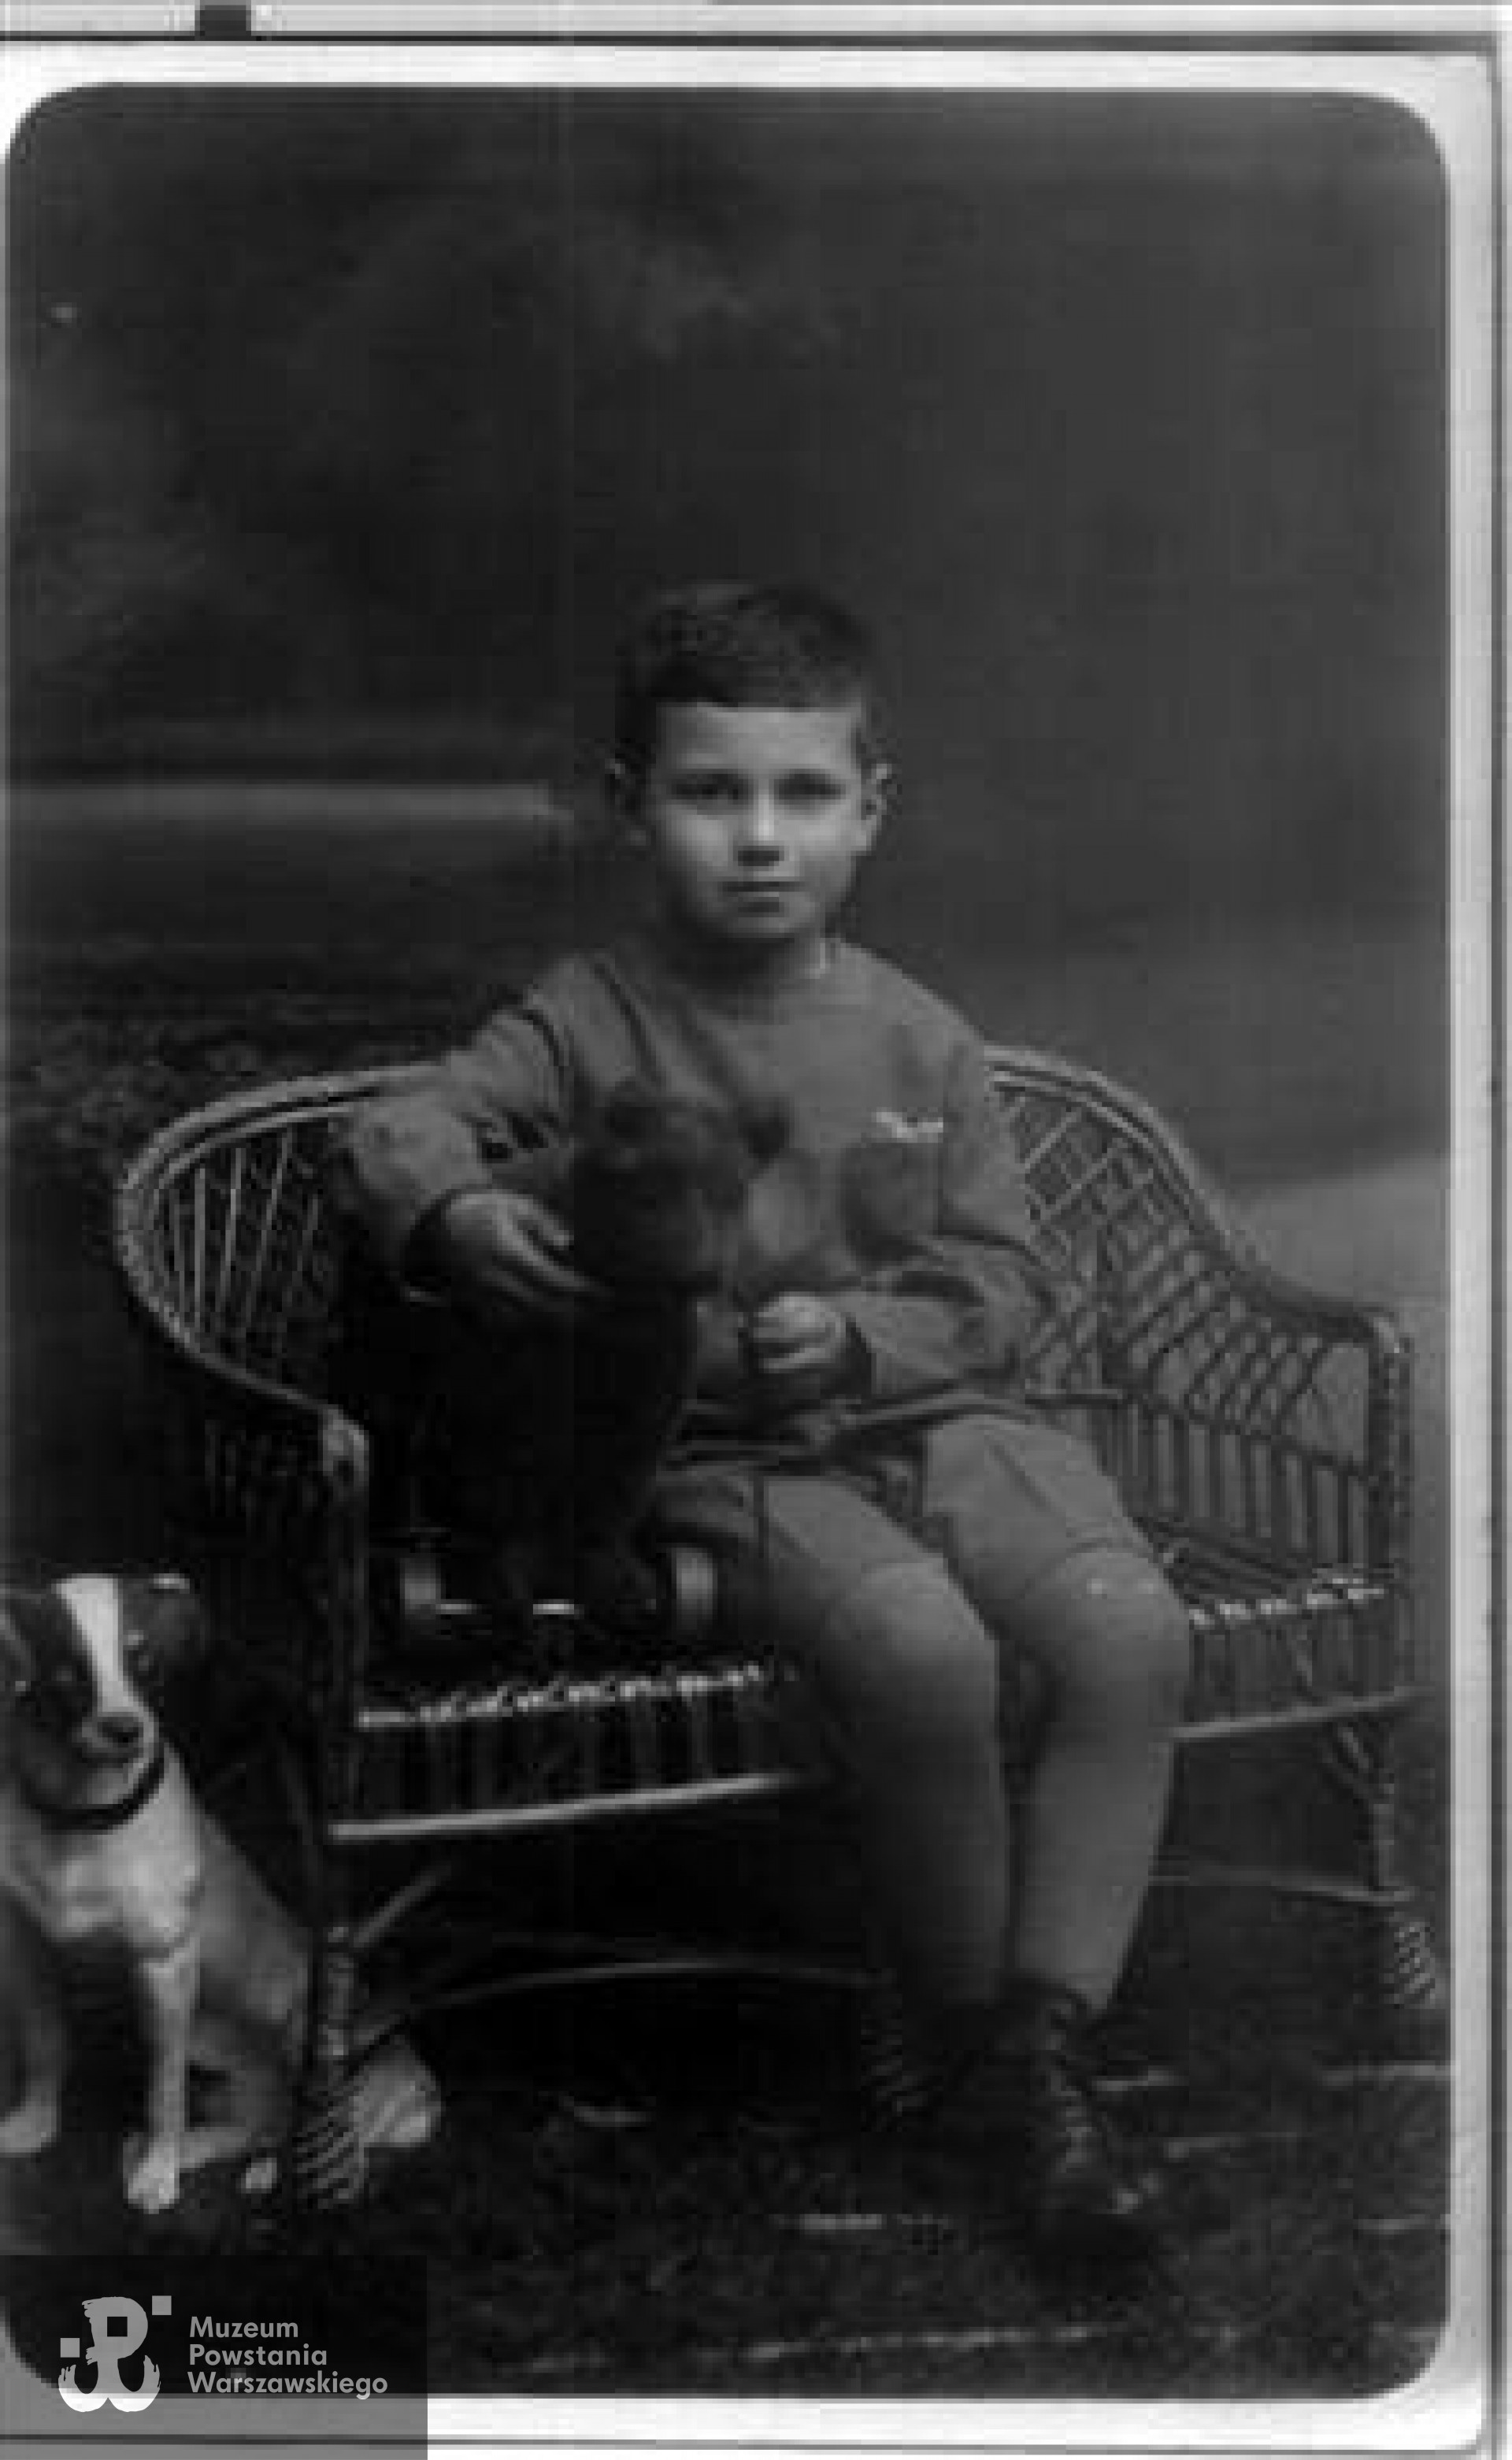 Ryszard Owsiany - początek lat 30. Zdjęcie ze zbiorów rodziny Zeidlerów, udostępnione przez Mirosława Zeidlera, (oprac. Jacek Paluchowski)